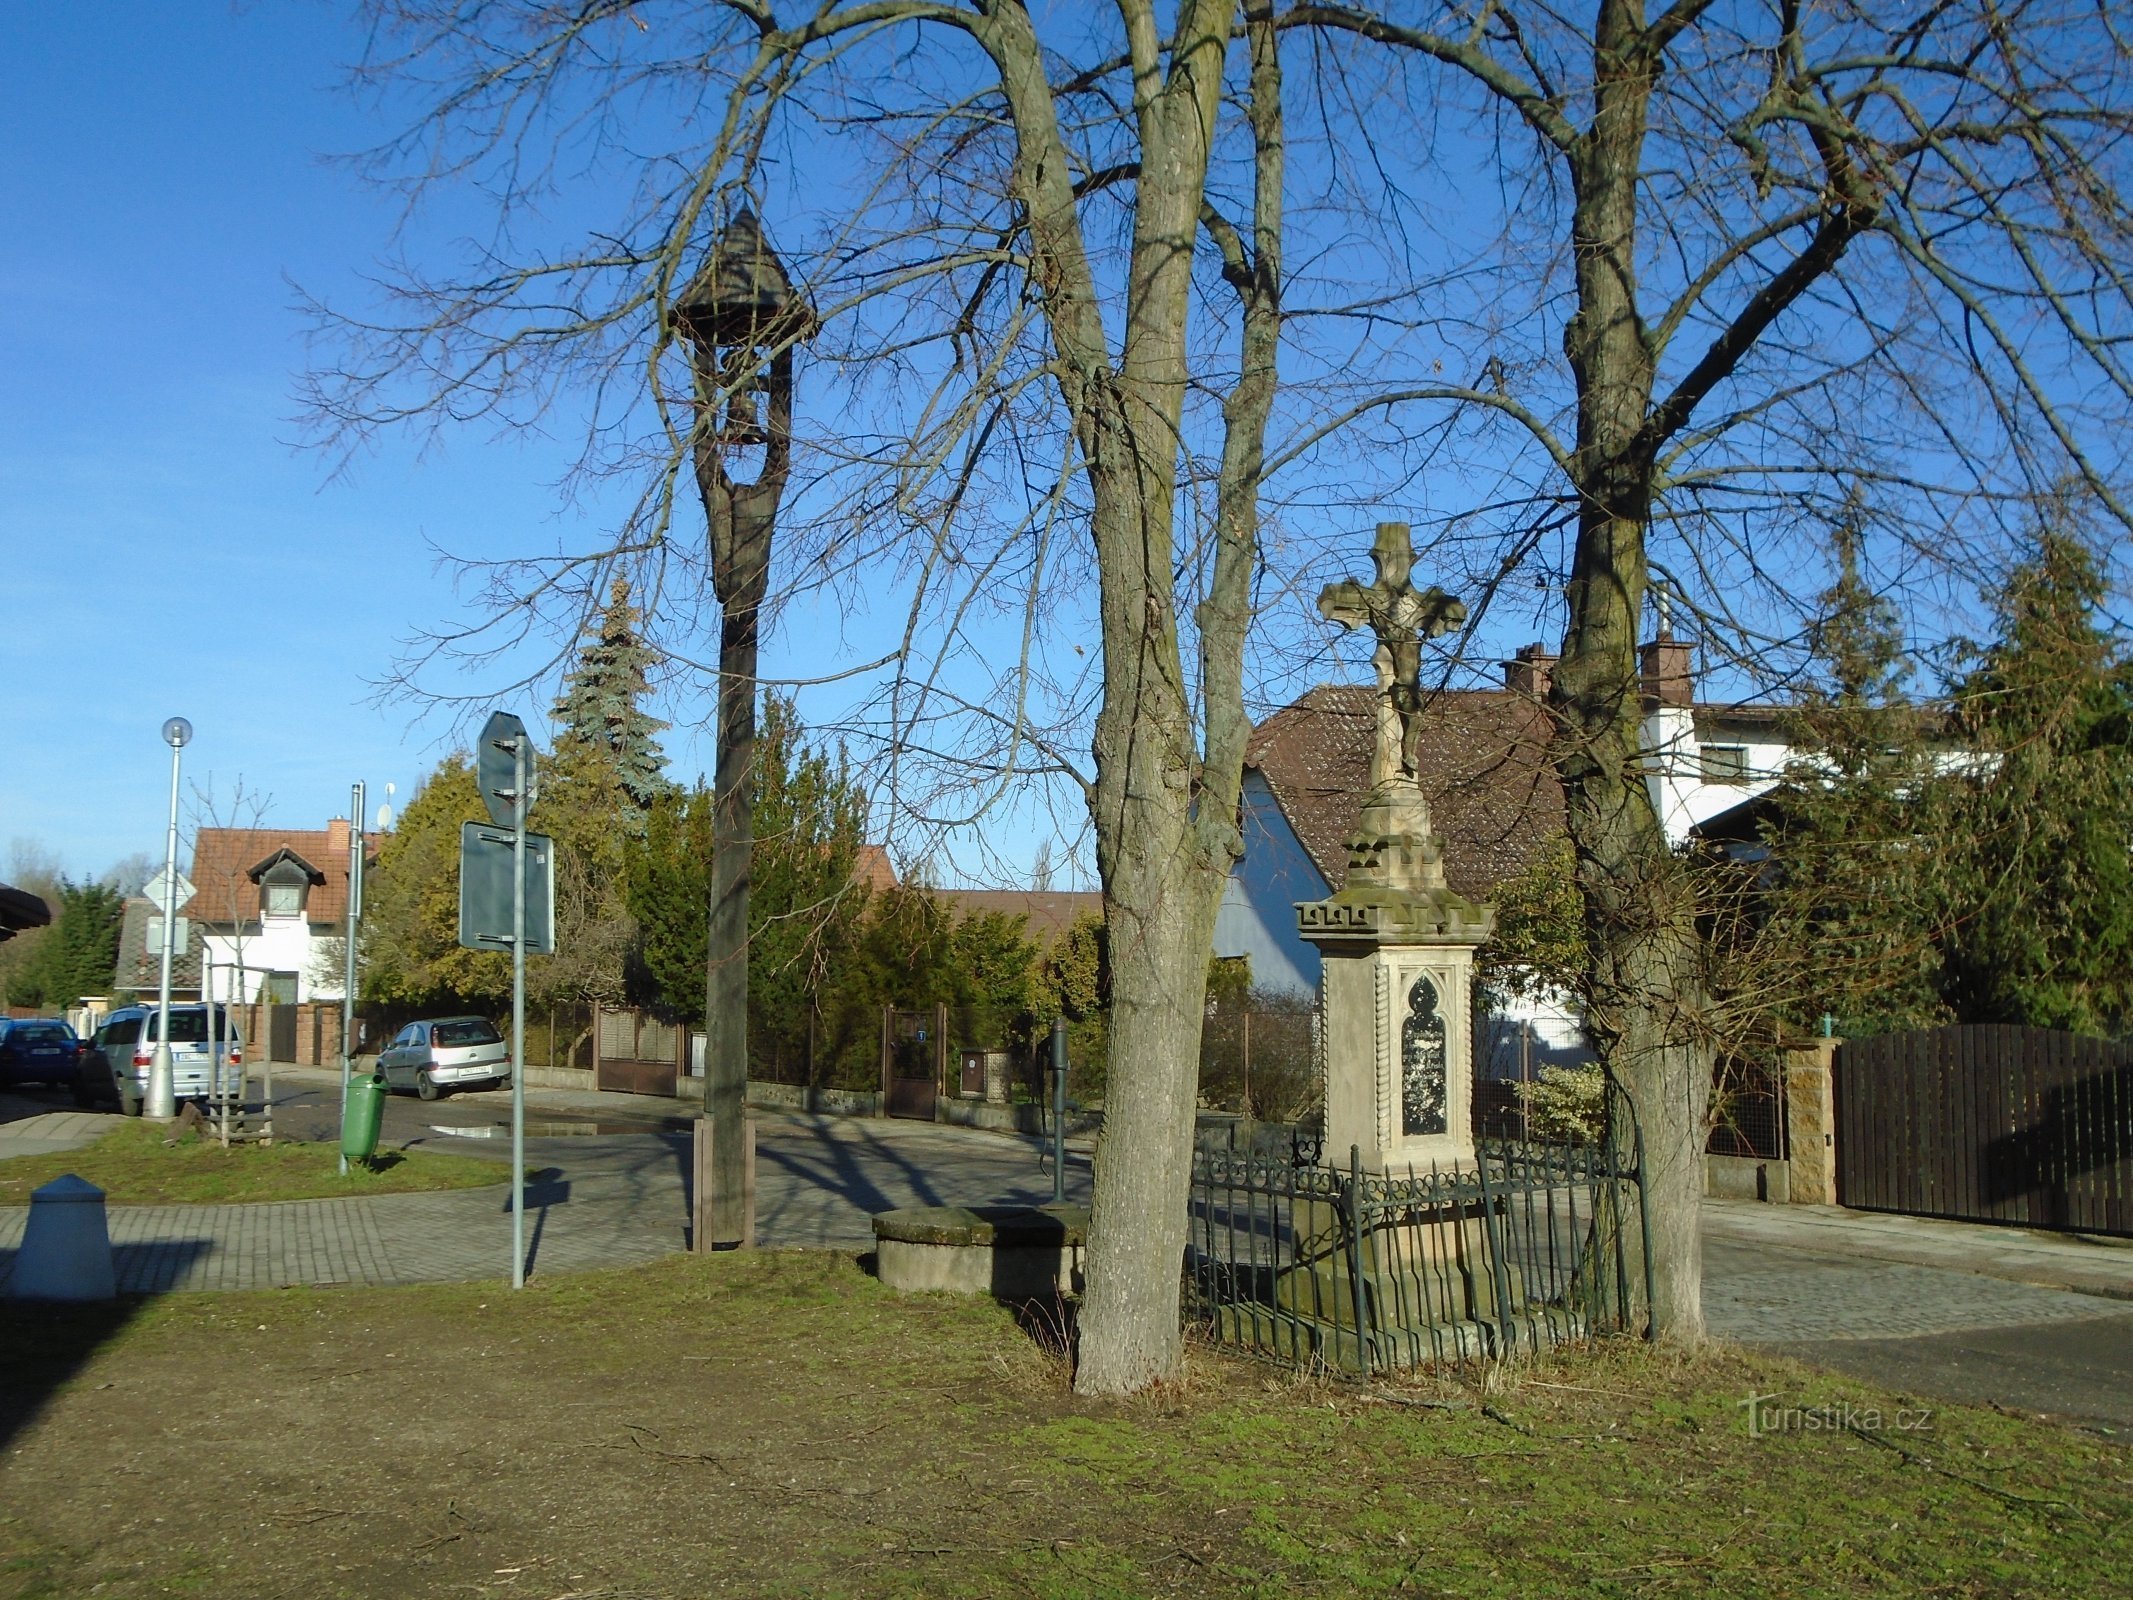 Tháp chuông và cây thánh giá ở phố Machková (Třebeš)